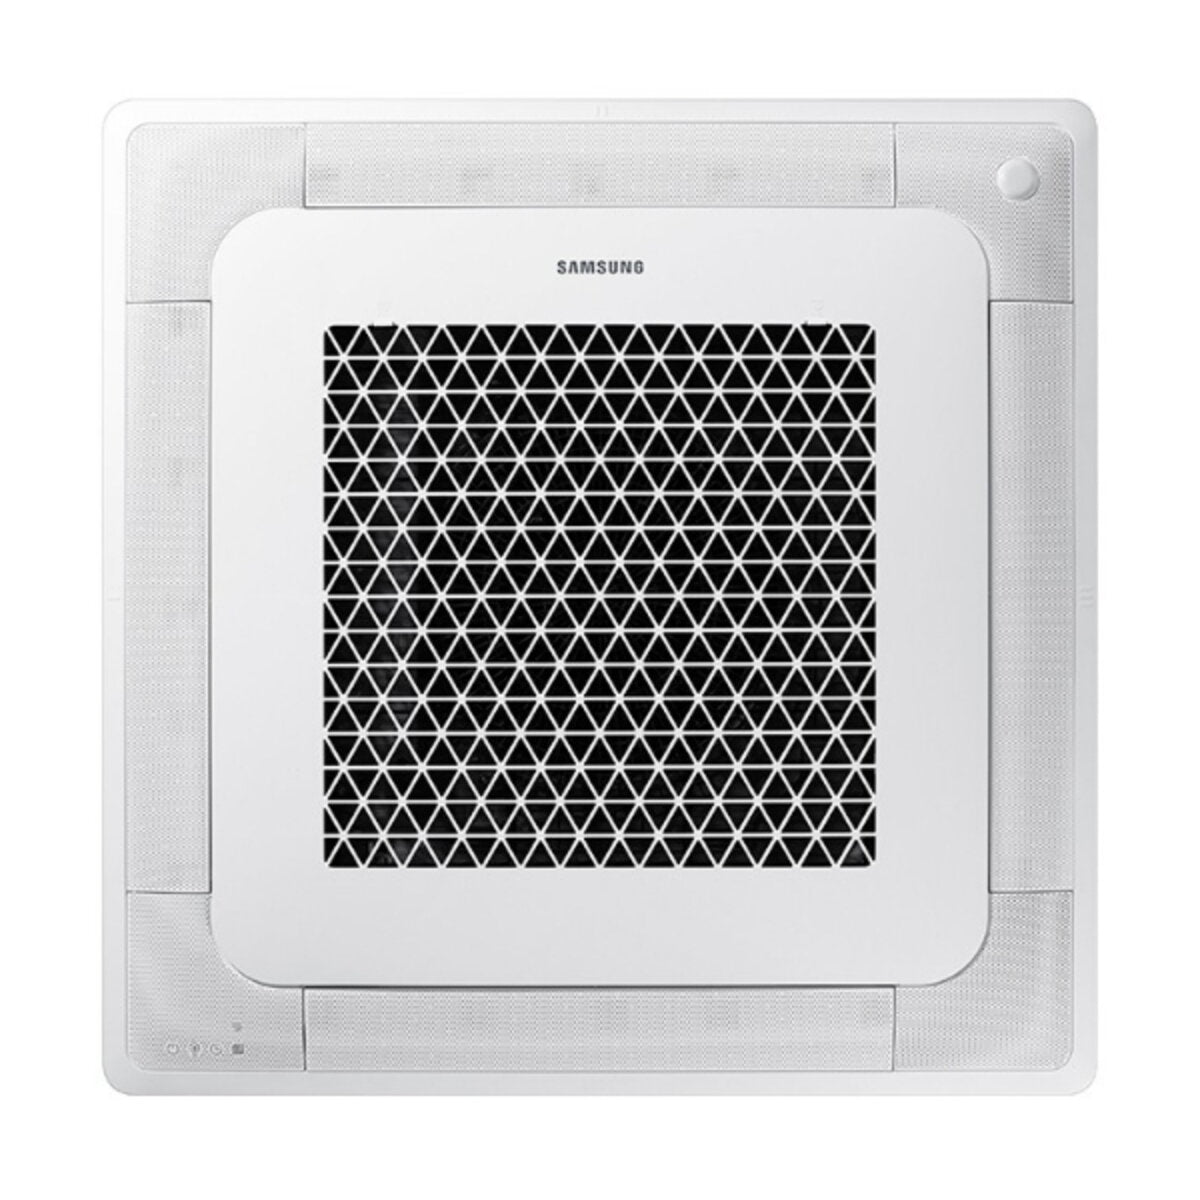 Samsung Klimaanlage Windfree 4-wege Pentasplit 9000 + 9000 + 9000 + 9000 + 18000 BTU Inverter A++ Außengerät 10,0 kW